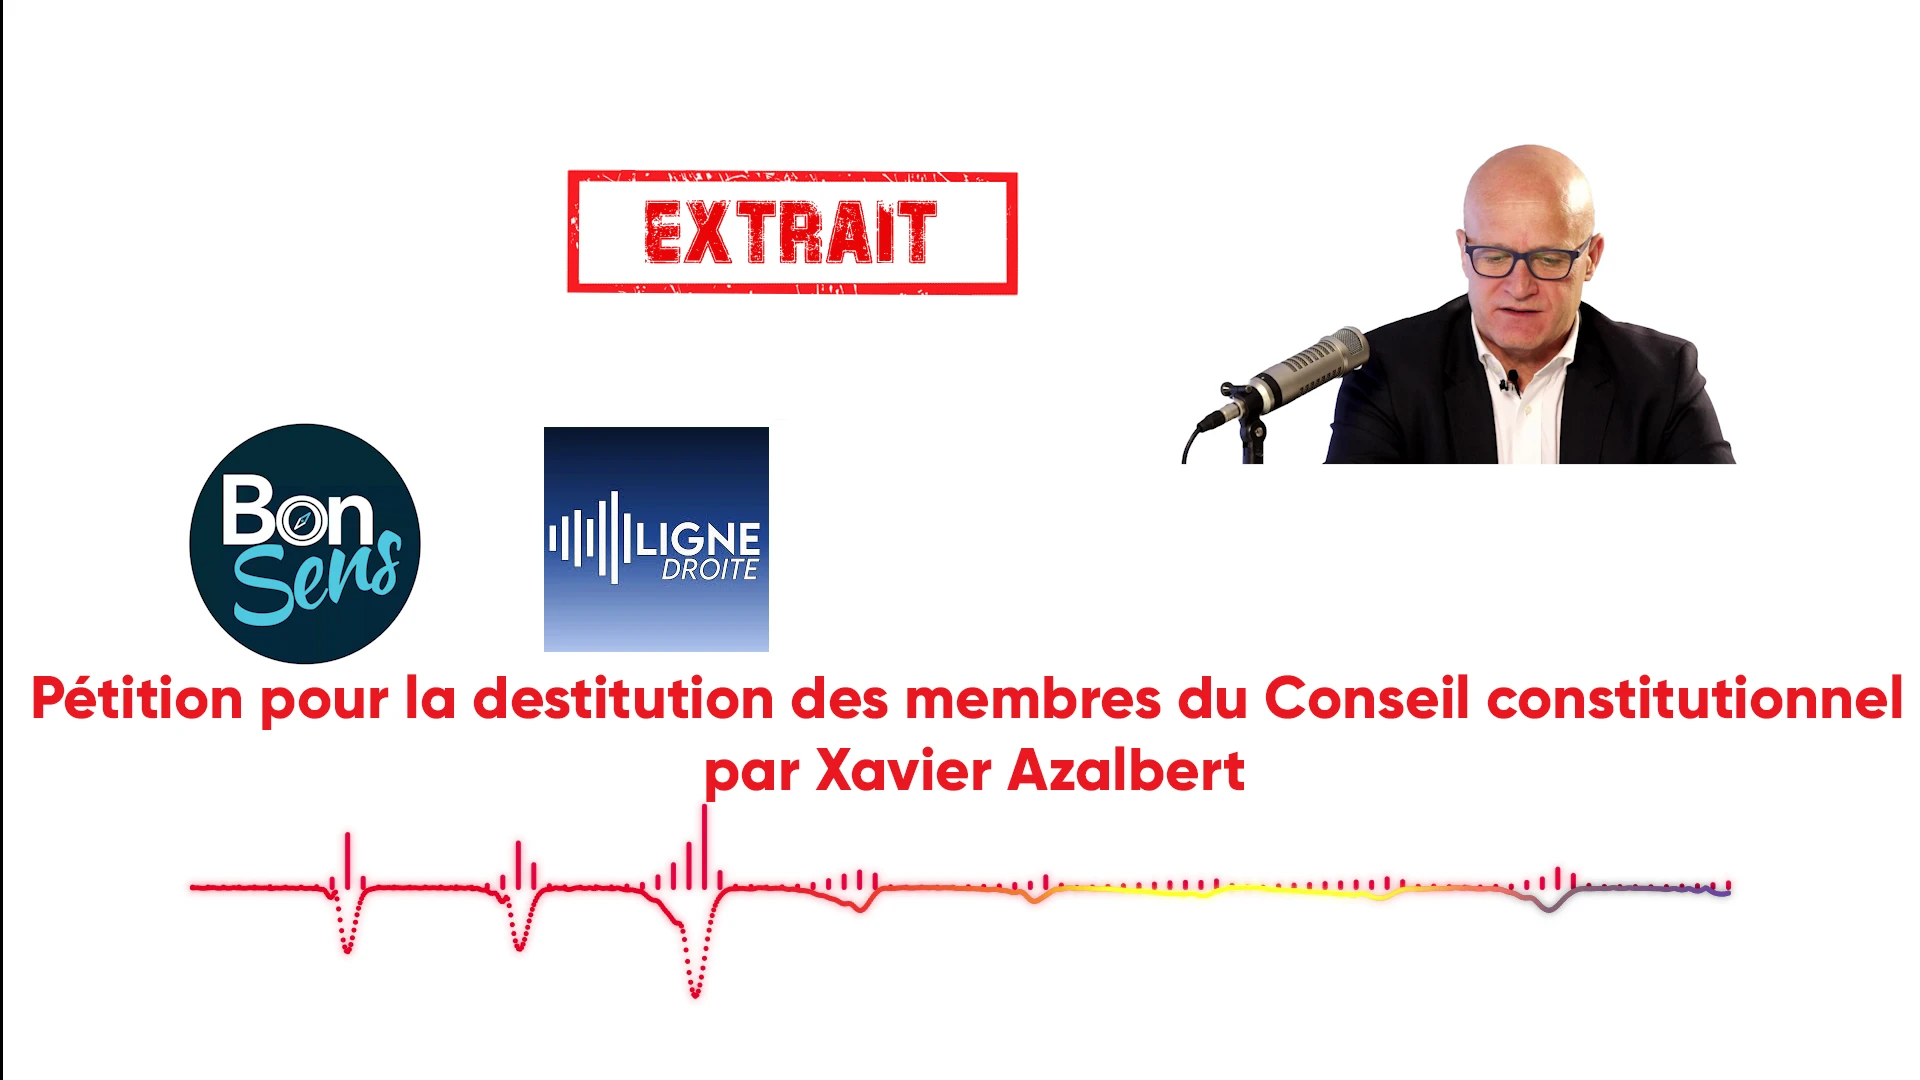 Pétition pour la destitution des membres du Conseil constitutionnel présentée par Xavier Azalbert de l’association «   Bonsens   » (extrait audio/radio)